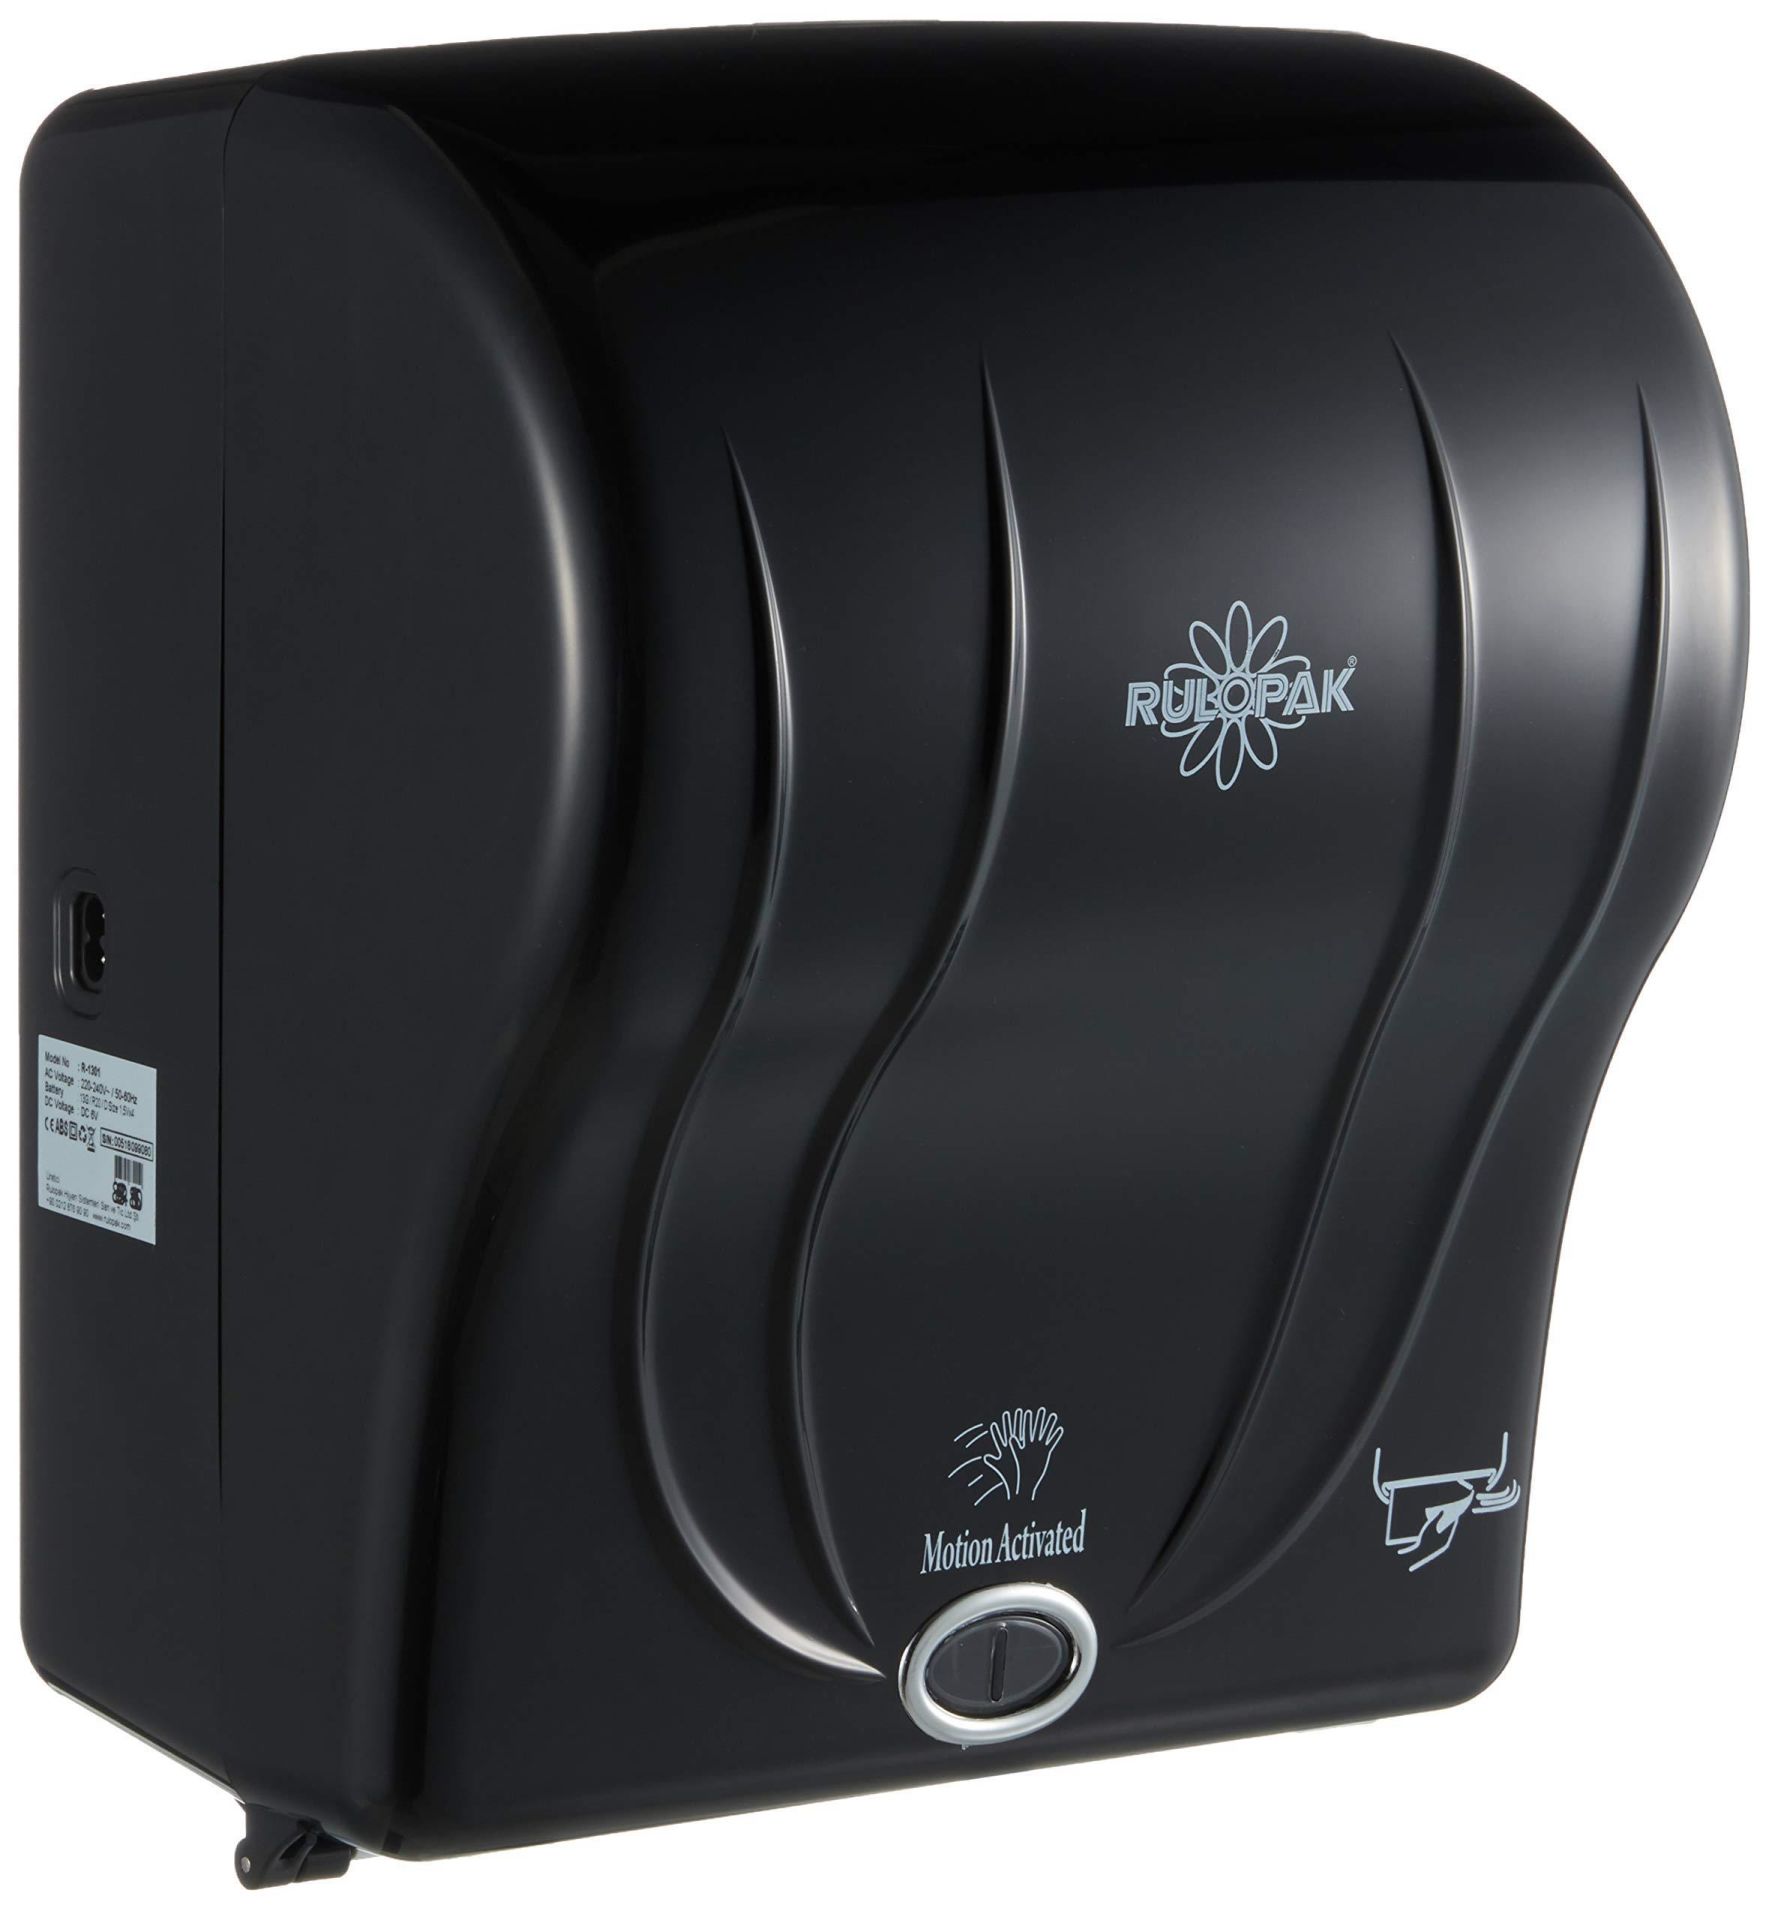 Rulopak R-1301 Sensörlü Havlu Dispenseri 21 cm - Siyah